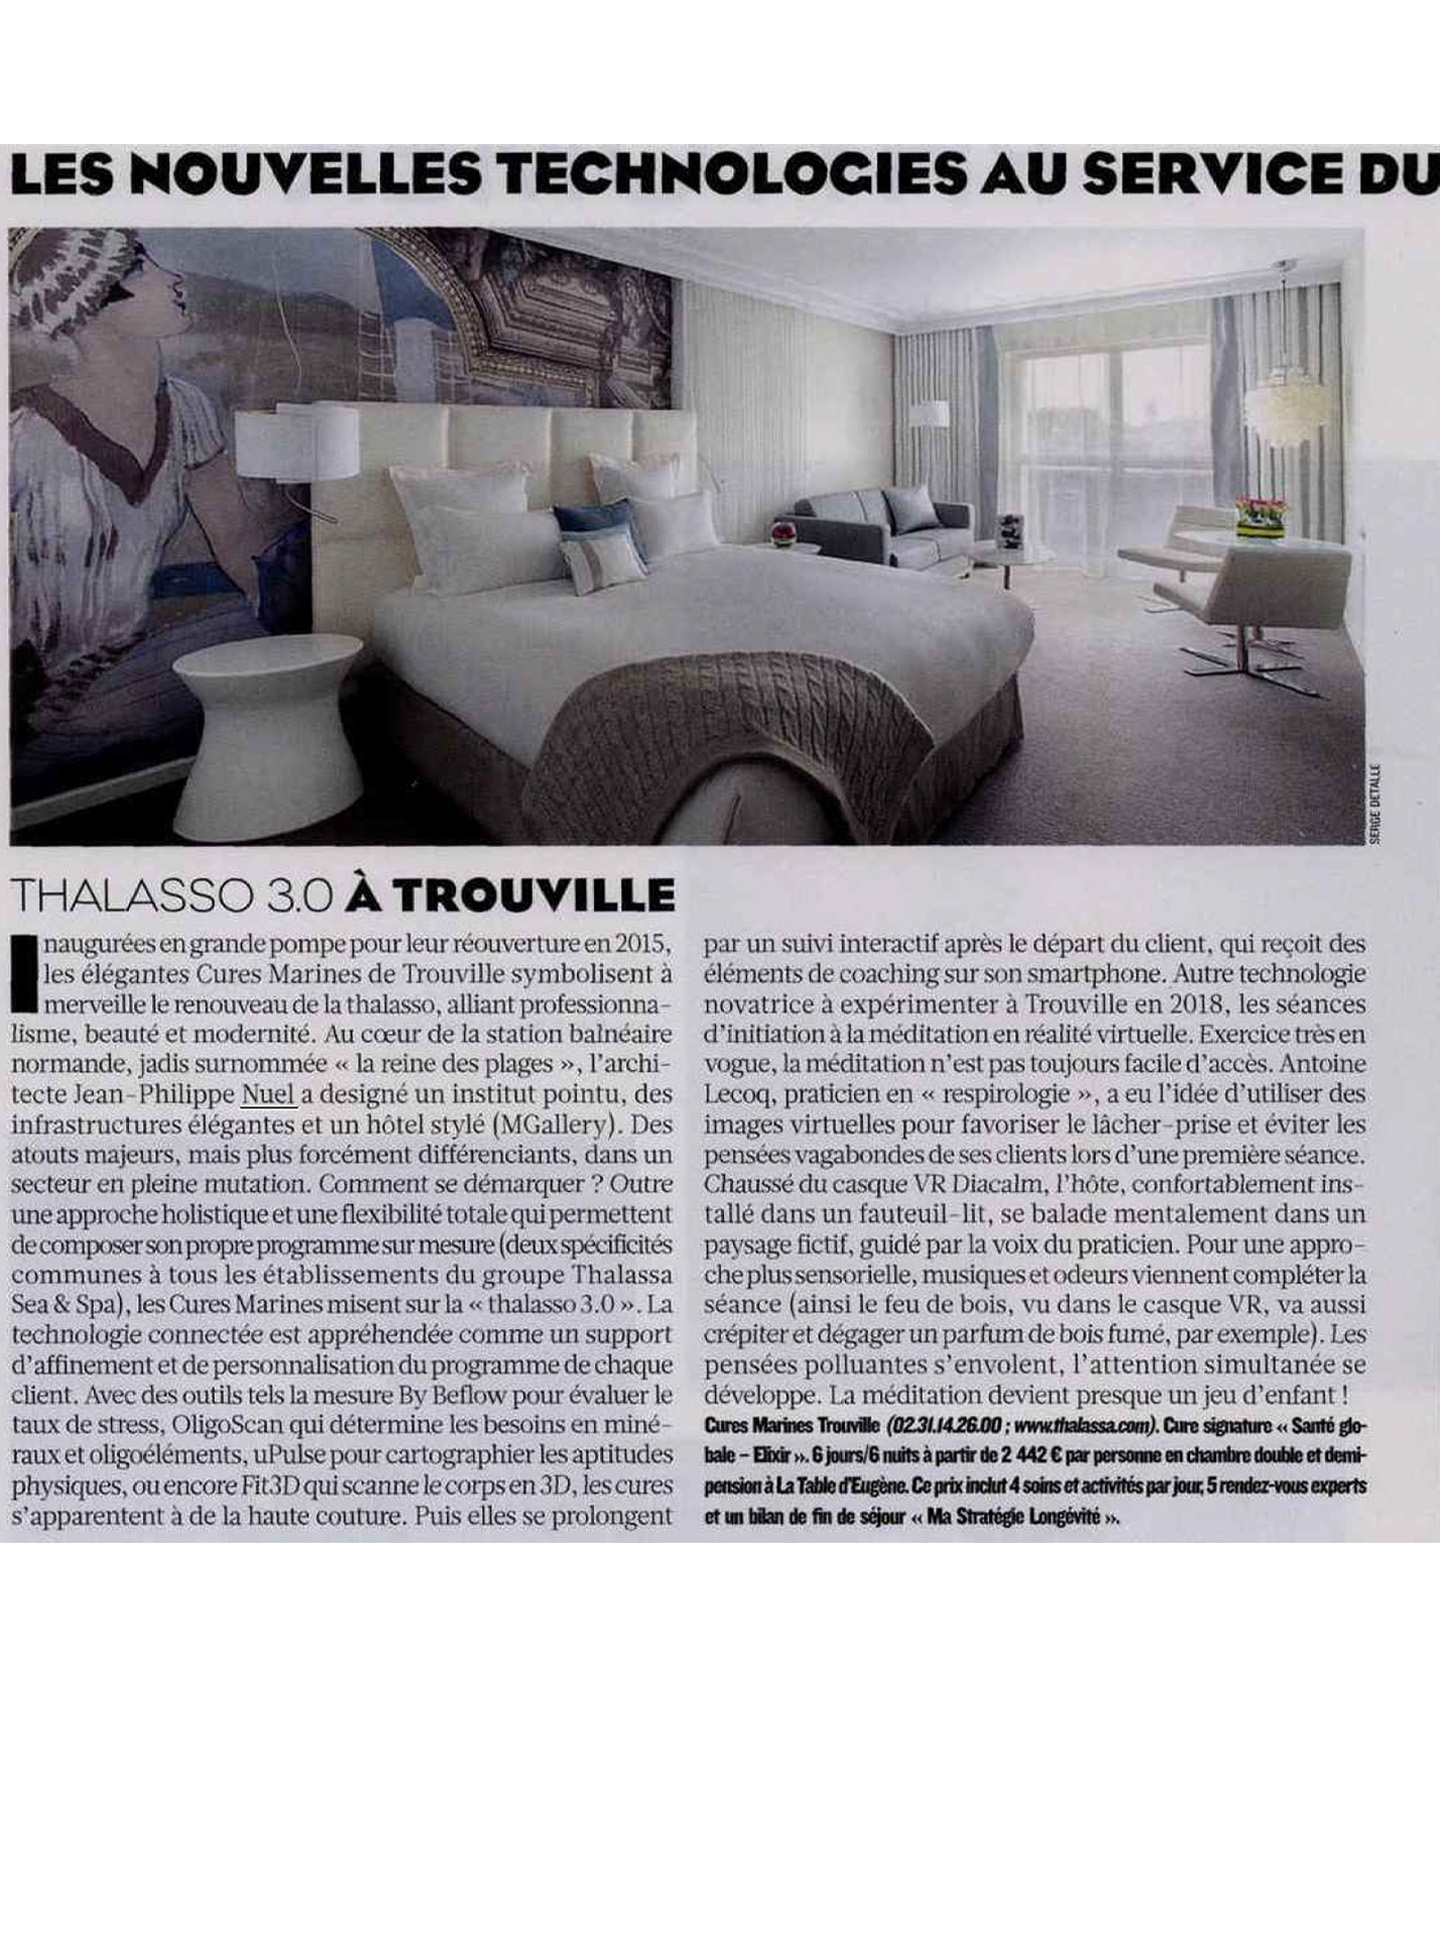 Article sur les cures marines de trouville réalisées par le studio jean-Philippe Nuel dans le figaro magazine, nouvel hotel de luxe, architecture d'intérieur de luxe, thalasso